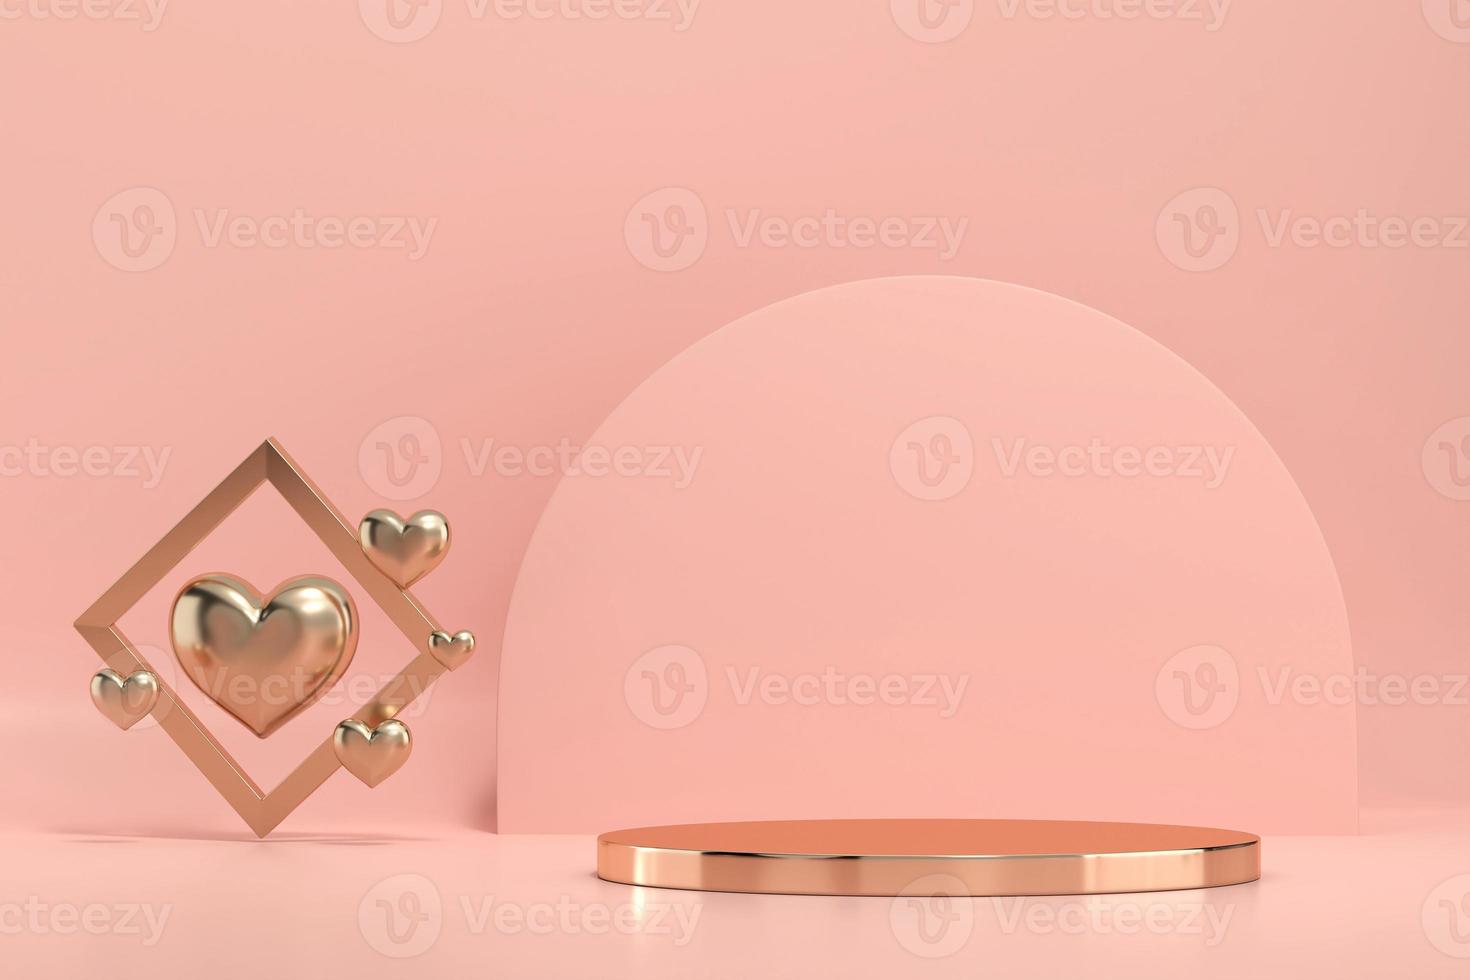 Plataforma del podio del escenario dorado del día de San Valentín con decoración de corazones para la exhibición de productos, render 3d foto